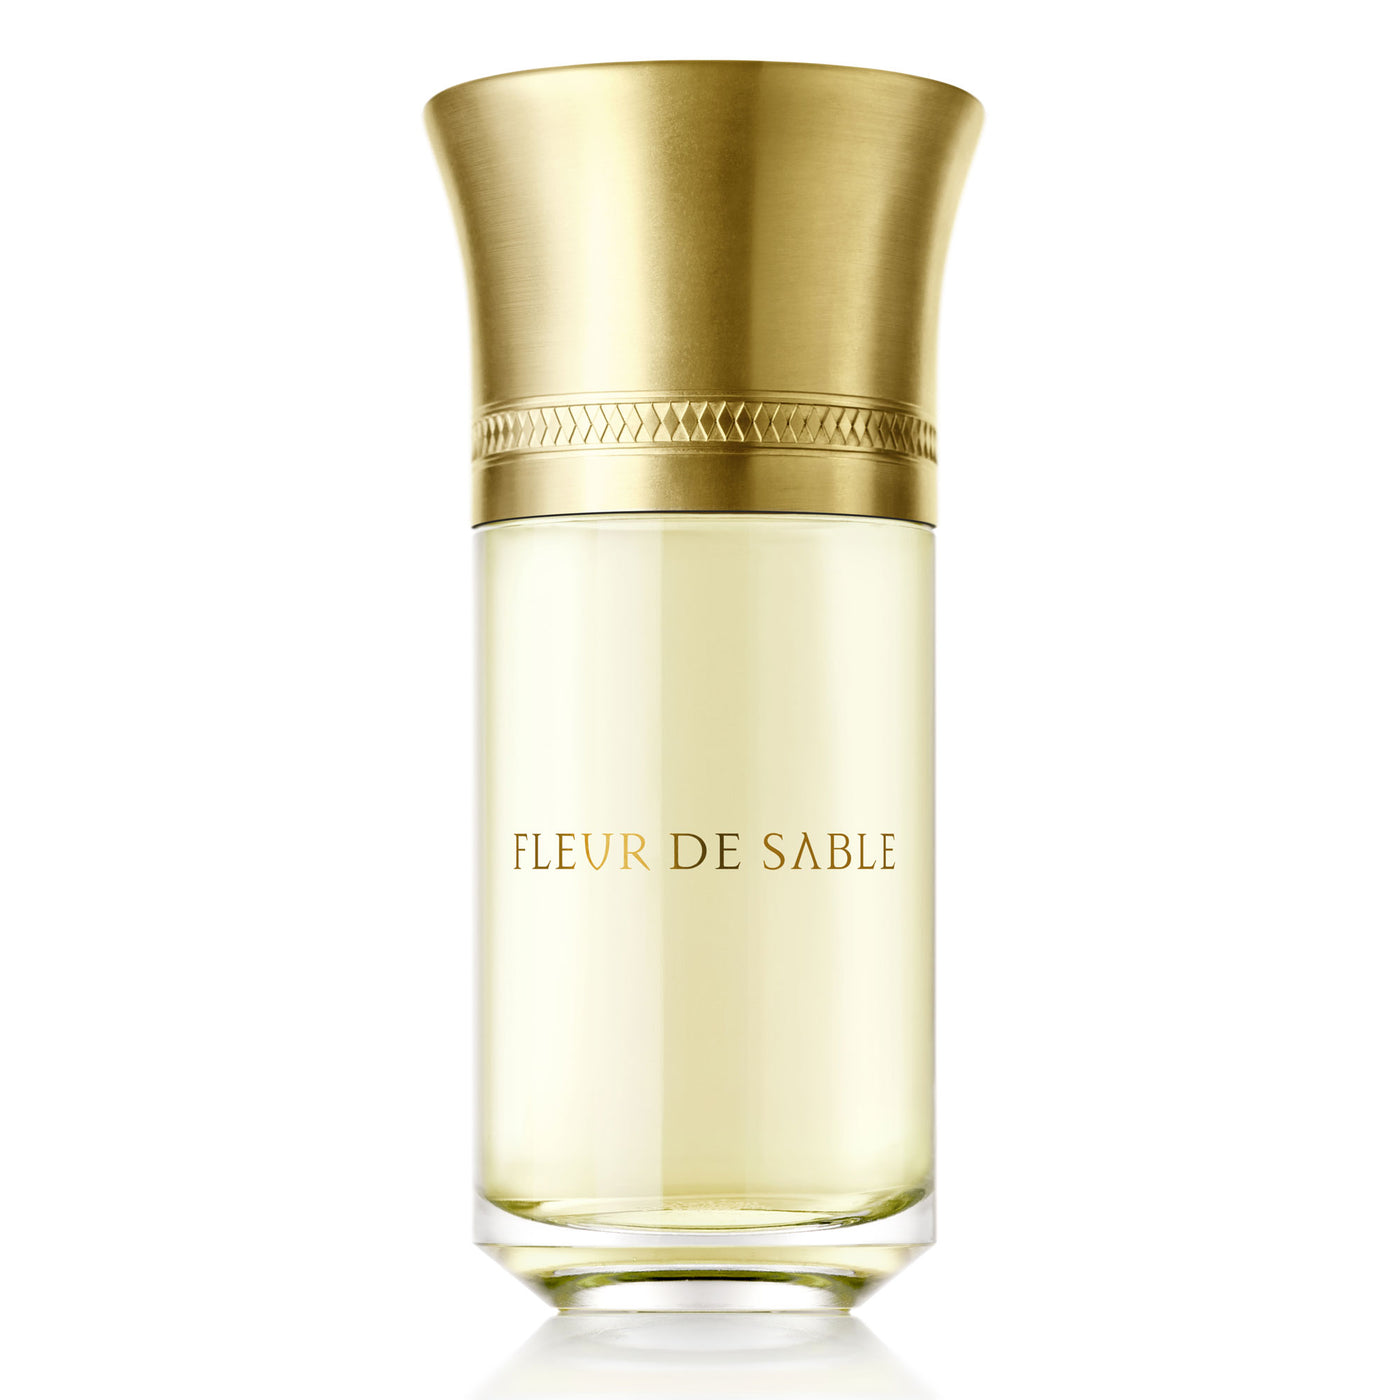 Liquides Imaginaires Fleur de Sable - 100ml - Gharyal by Collectibles 